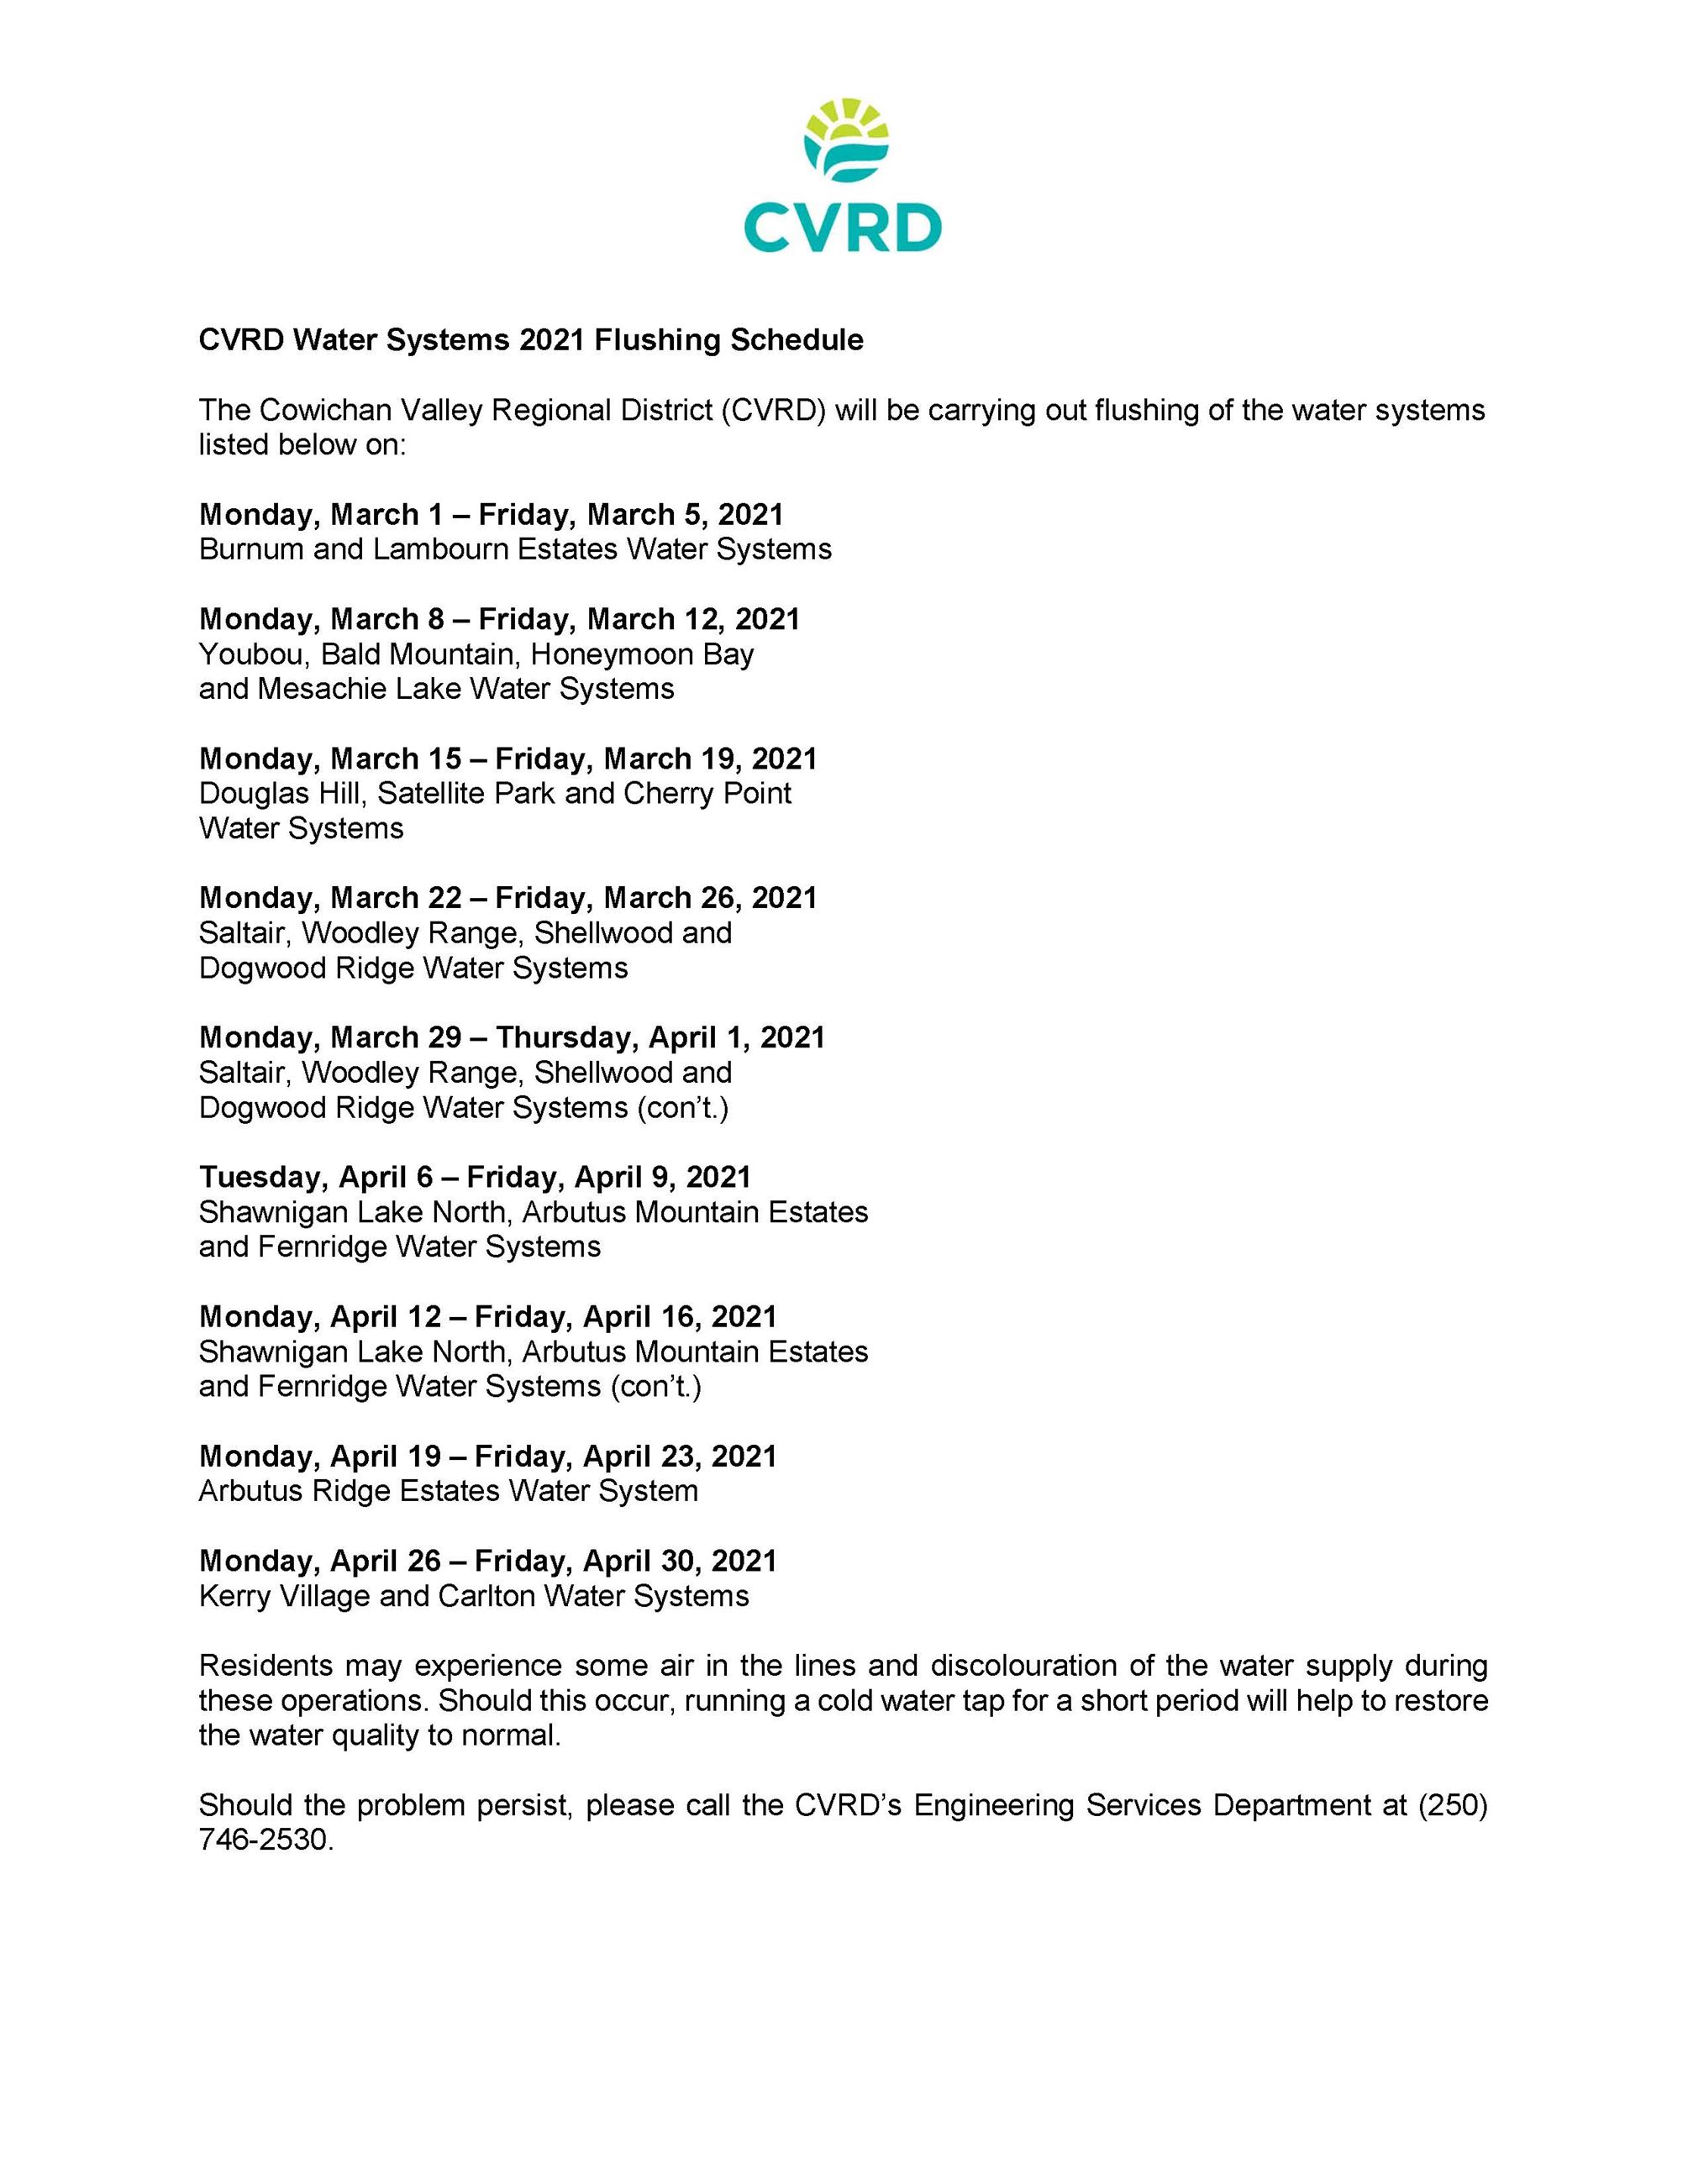 CVRD 2021 Flushing Schedule